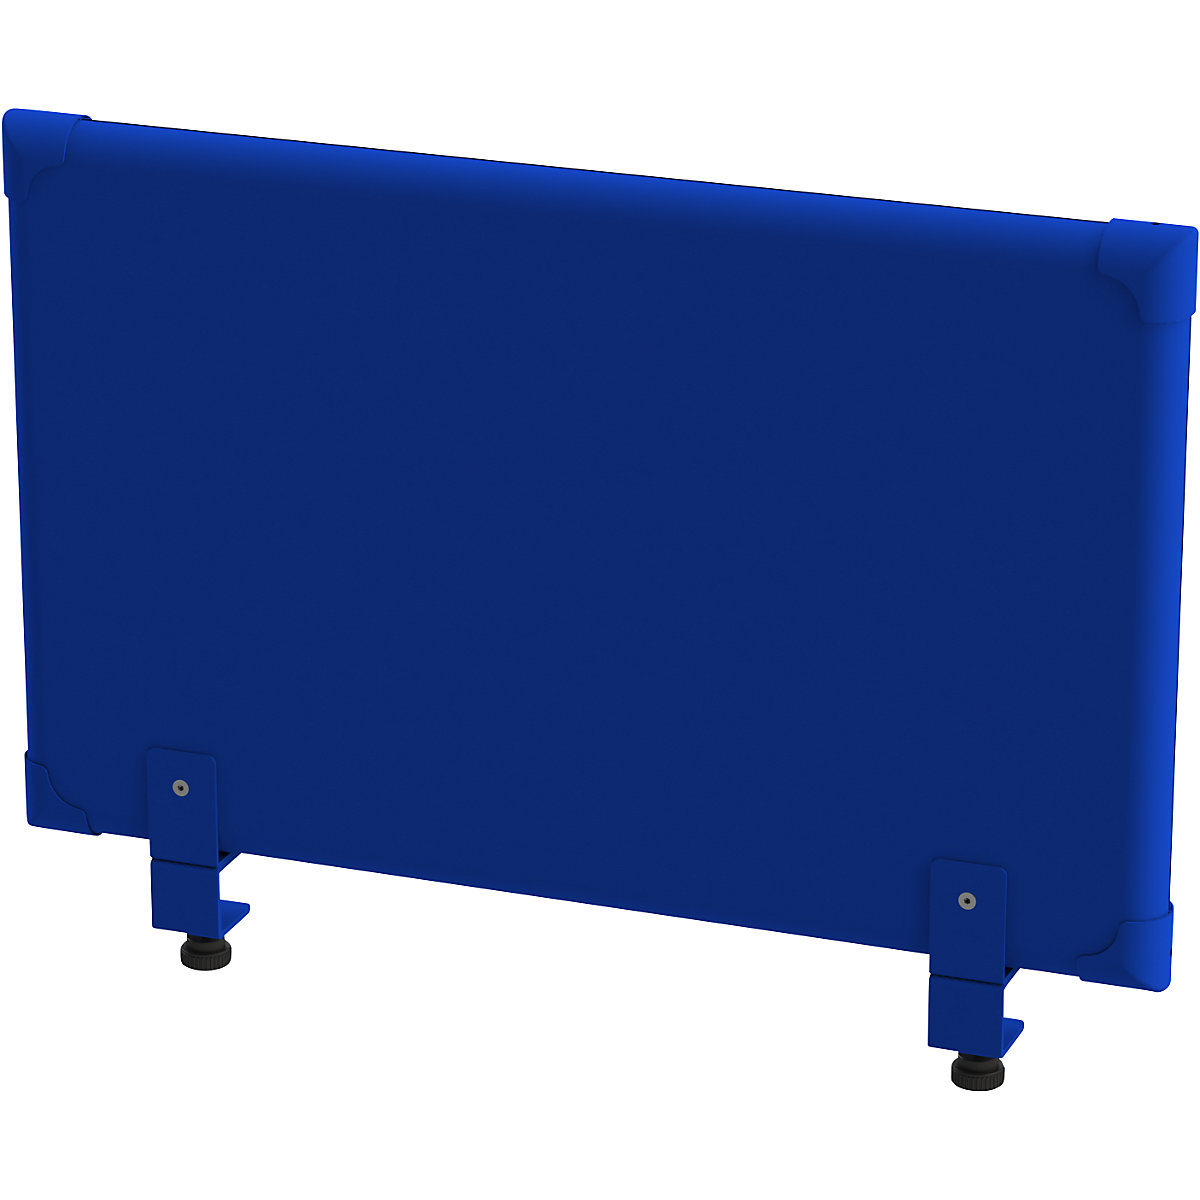 EUROKRAFTpro Akustik-Tischaufsatz-Paneel, Höhe 450 mm, Breite 800 mm, blau